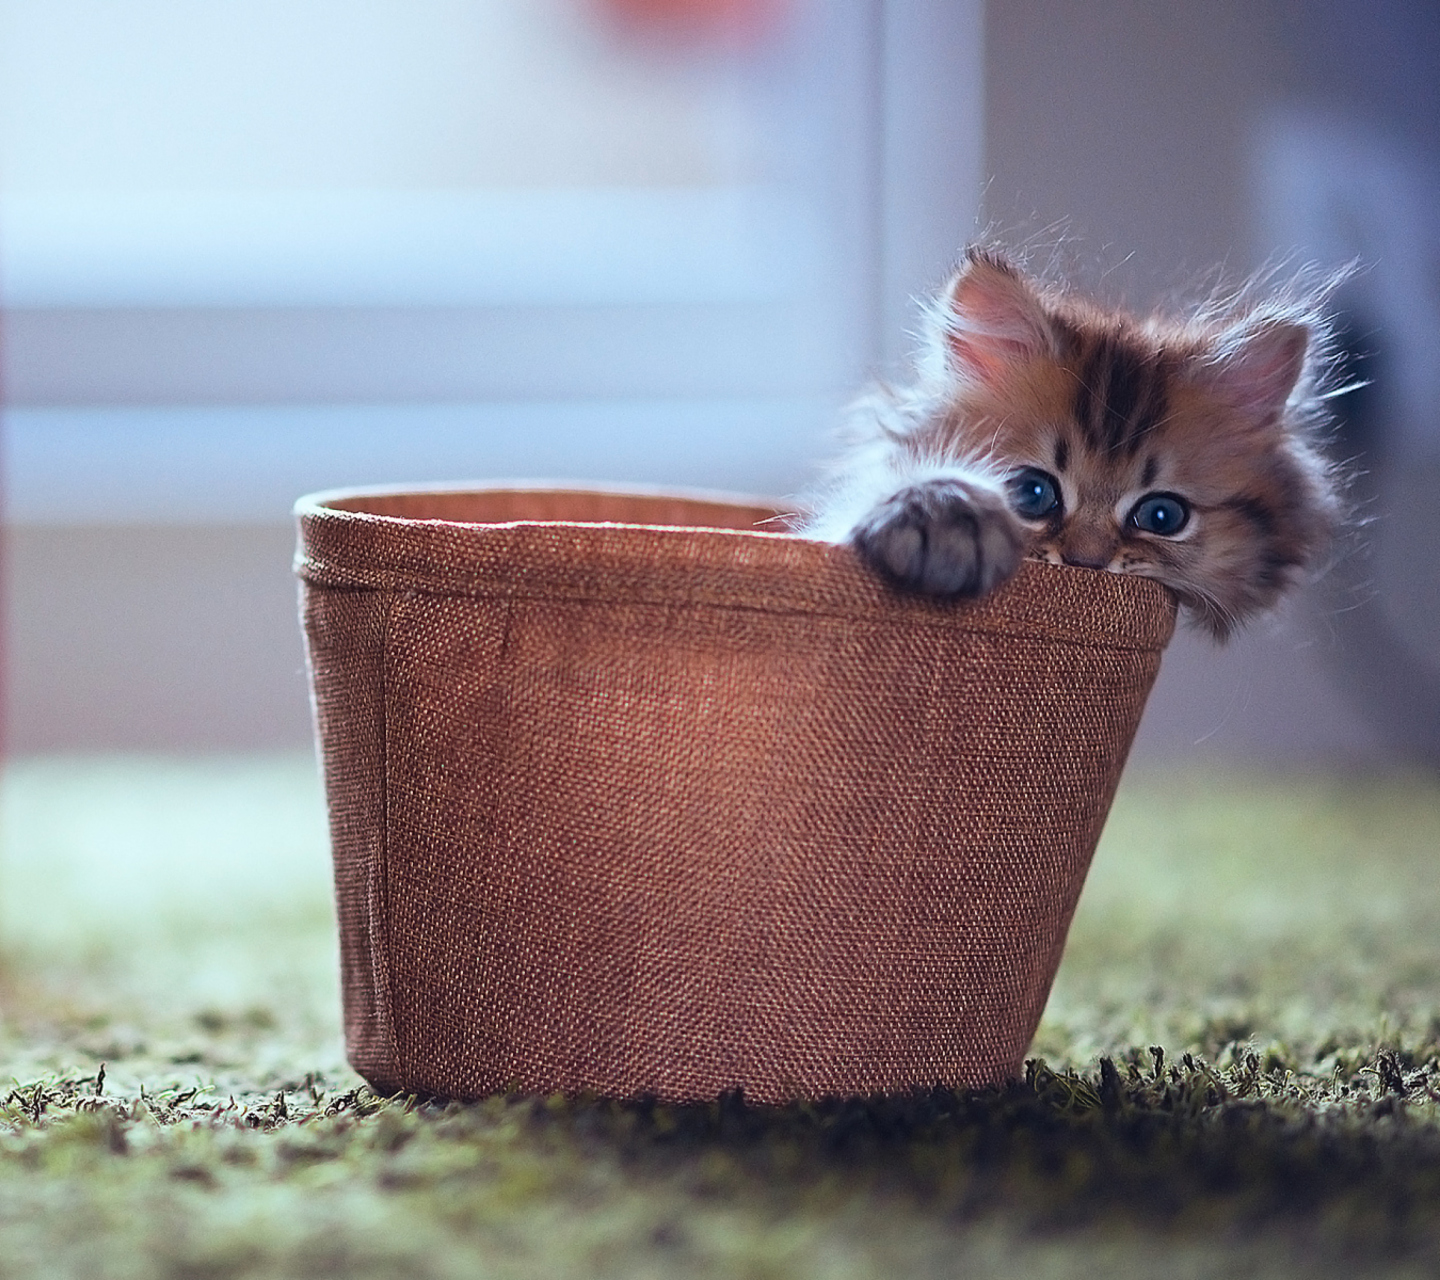 Little Kitten In Basket wallpaper 1440x1280